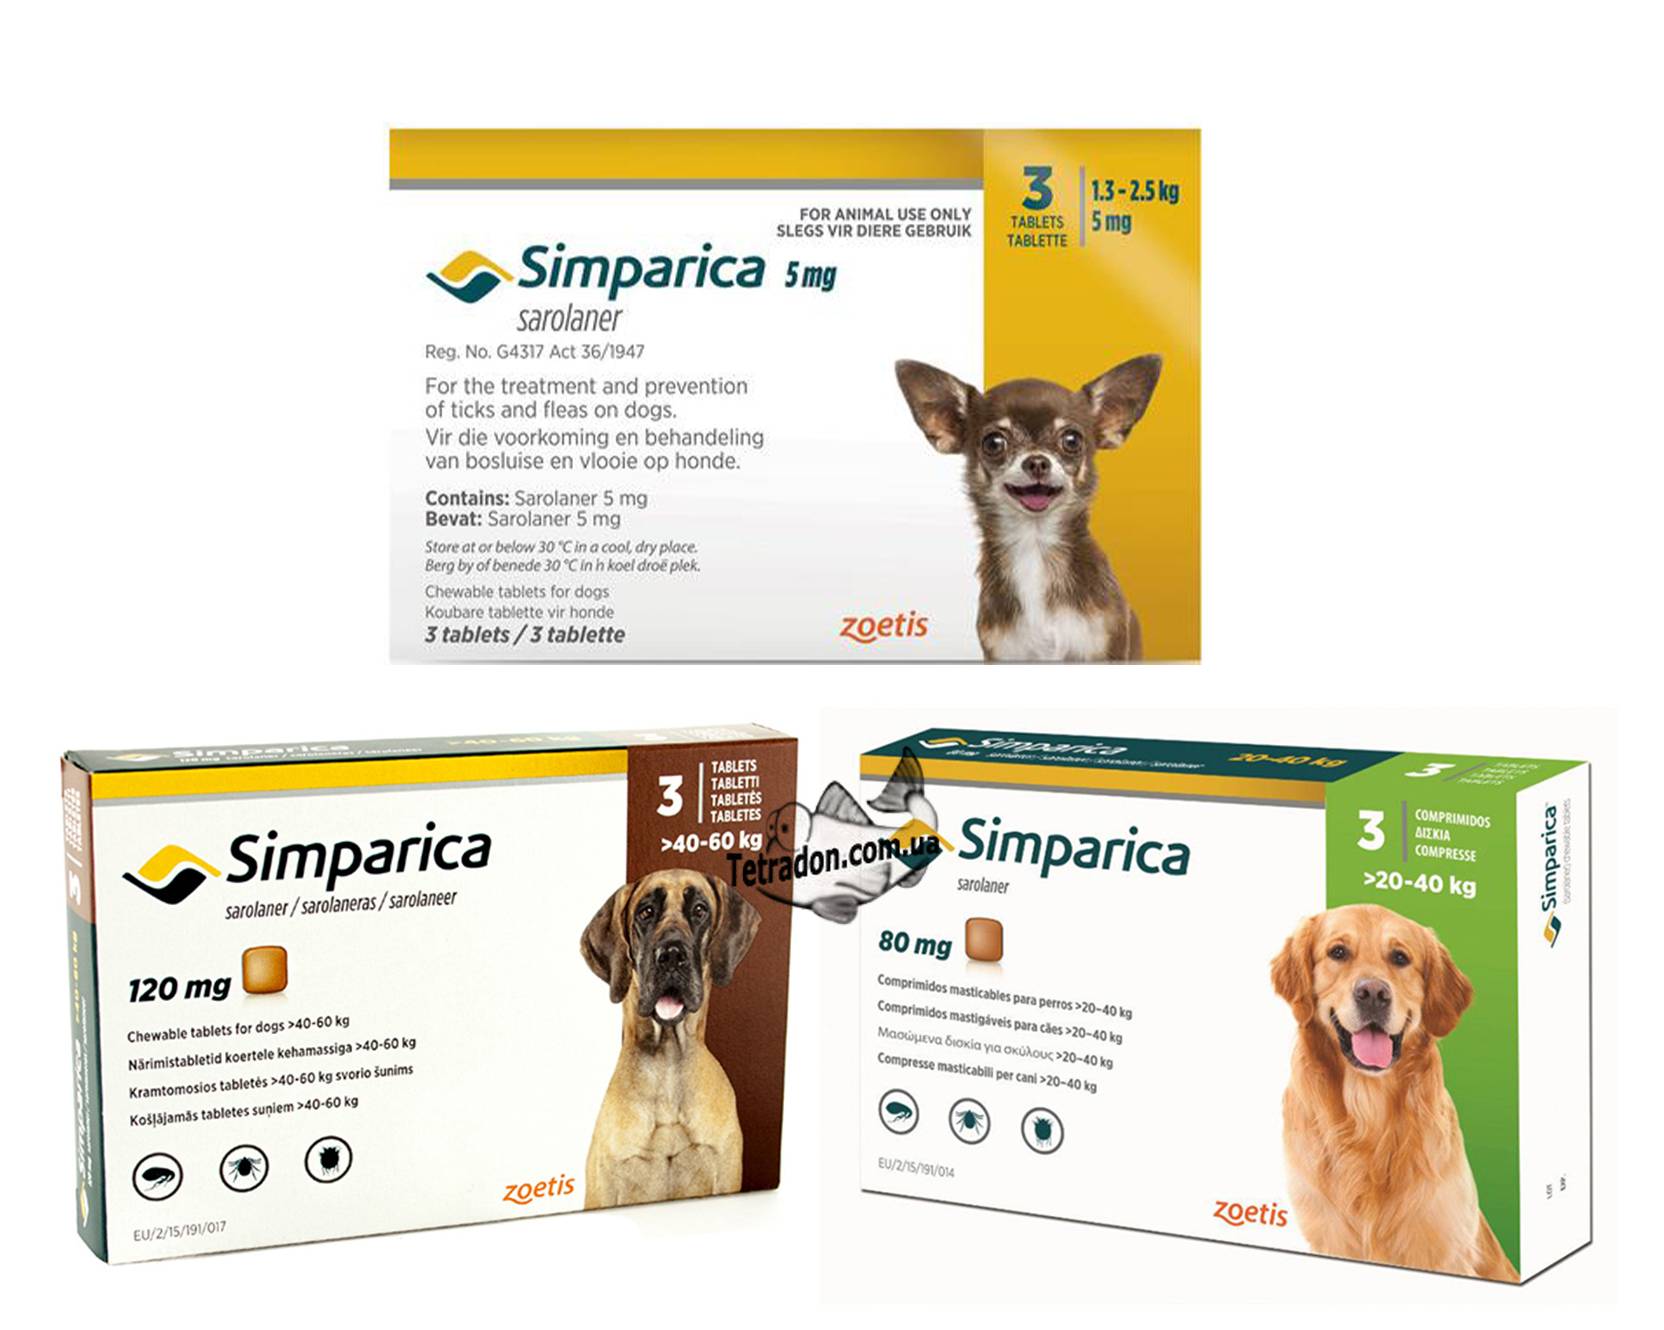 Таблетки для собак от блох и клещей для лечения и профилактики заболеваний